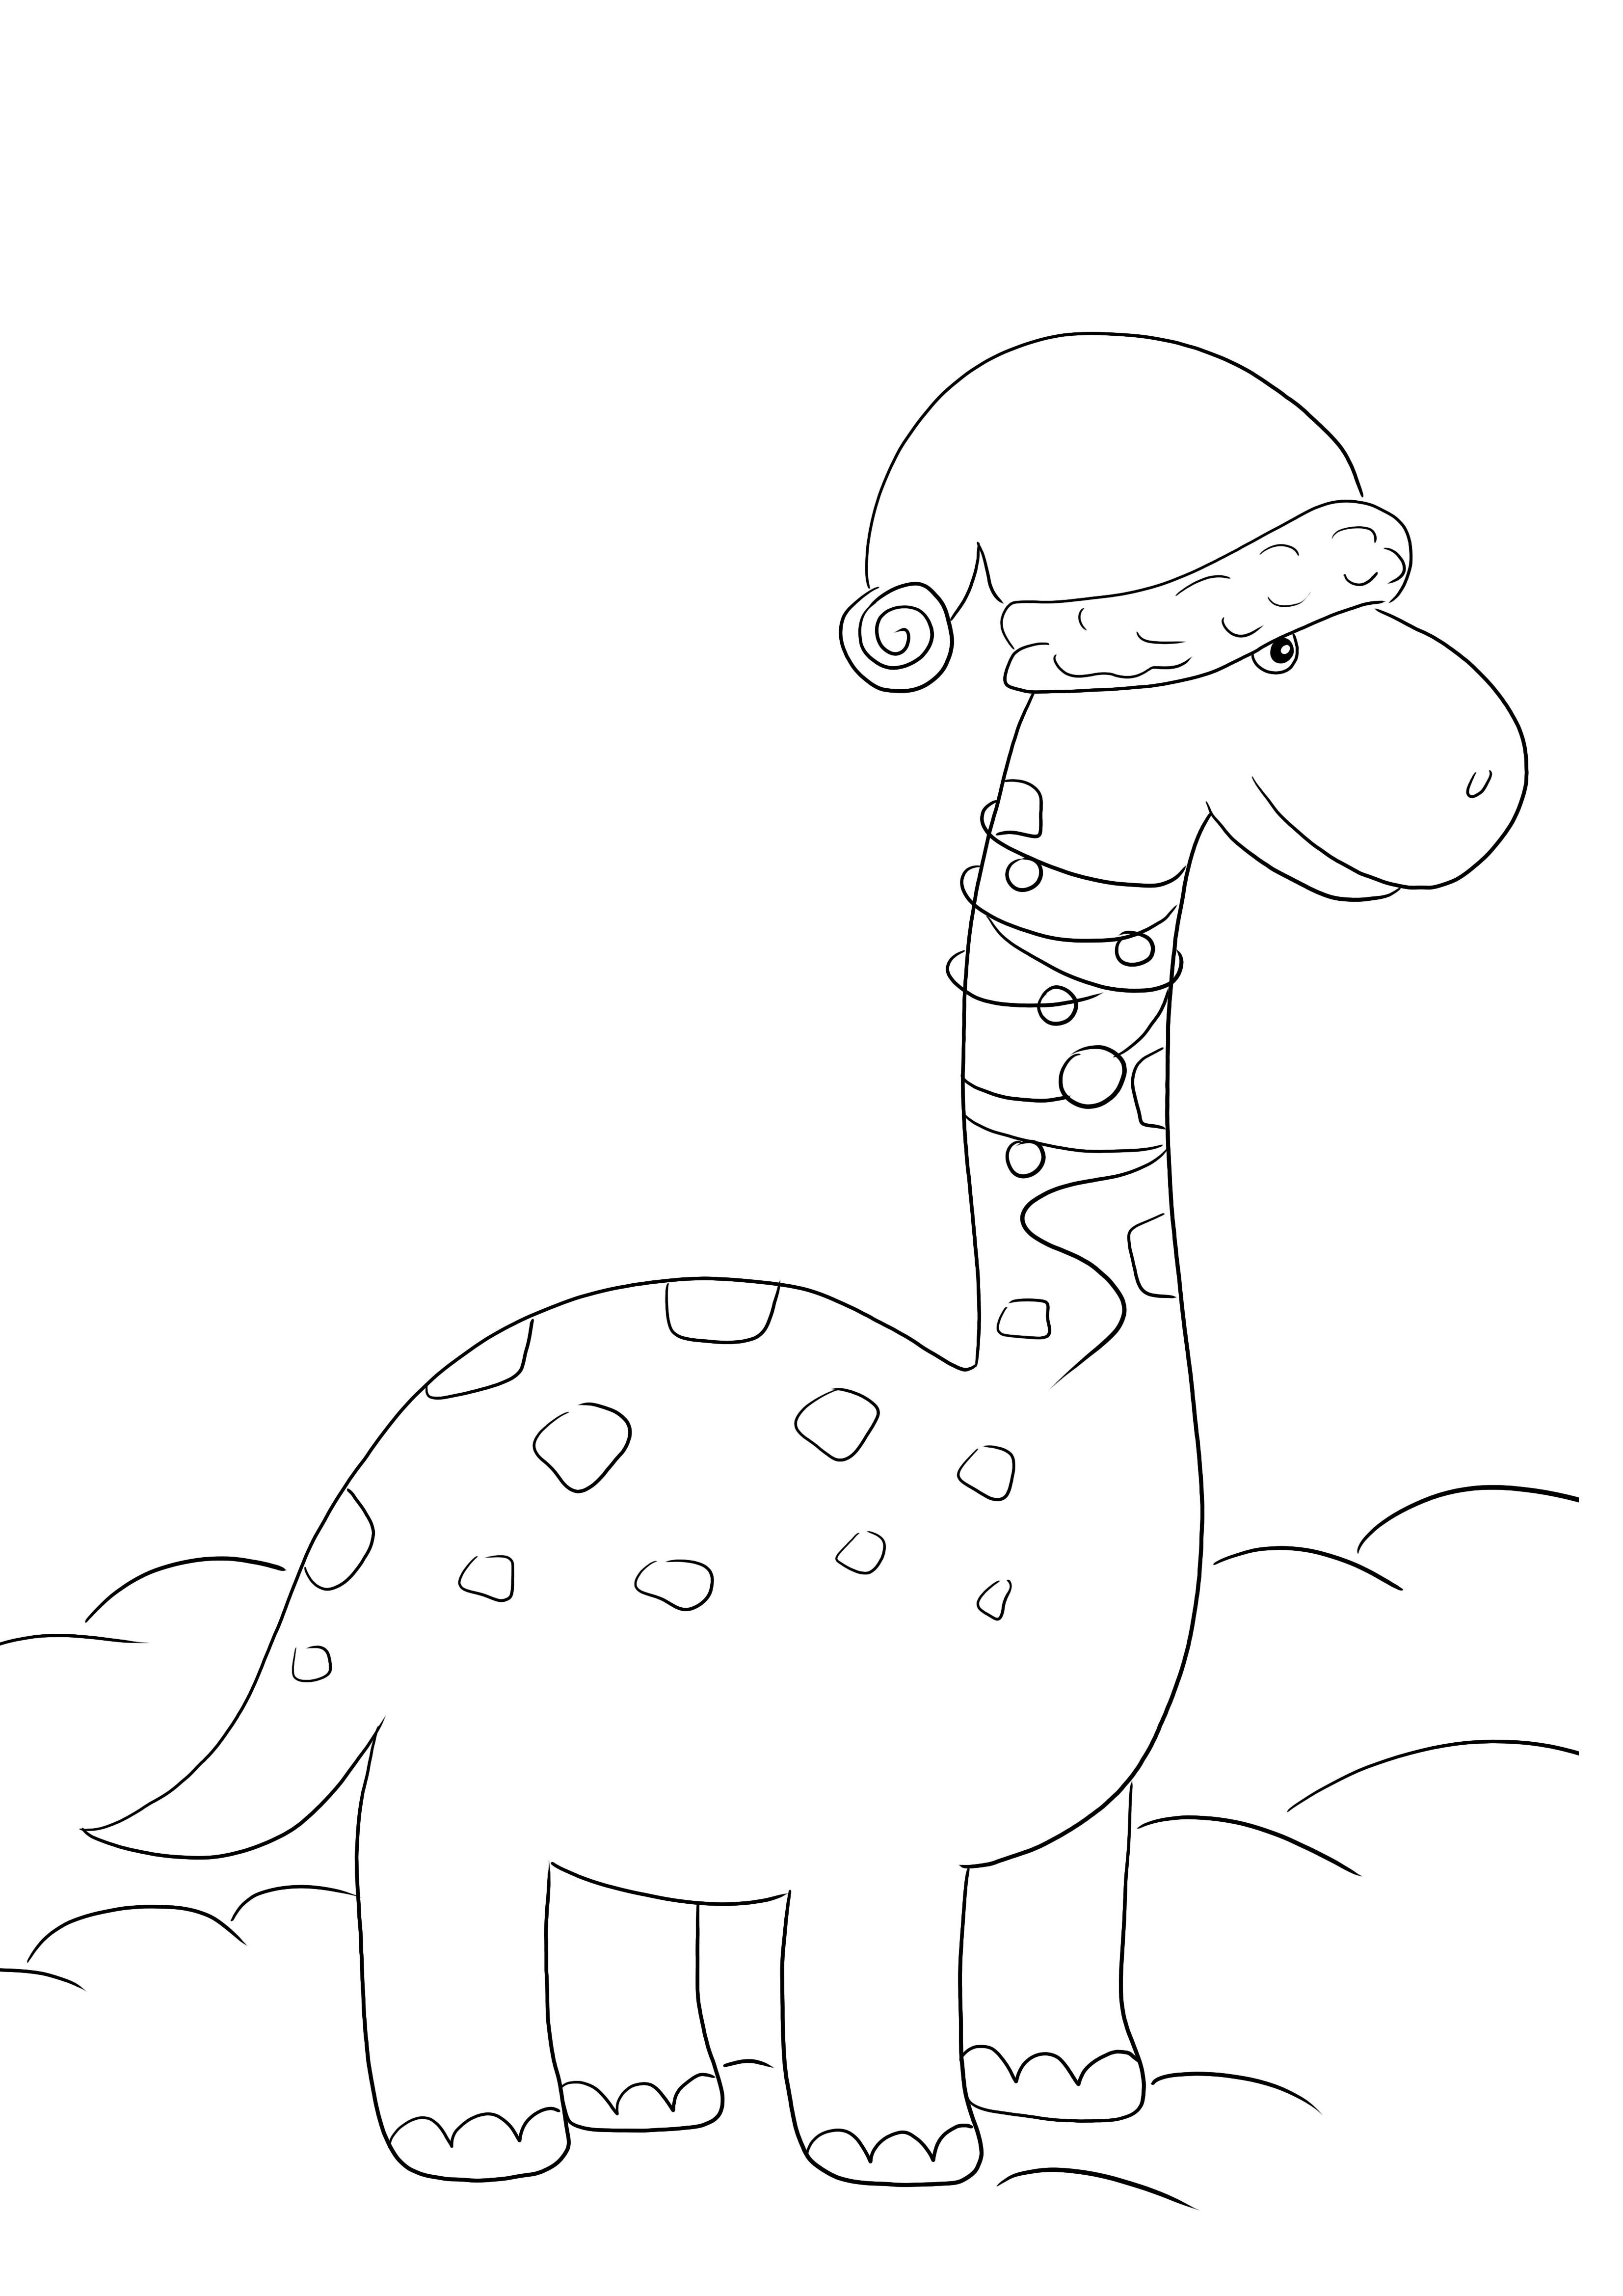 Desenho de dinossauro de natal para colorir